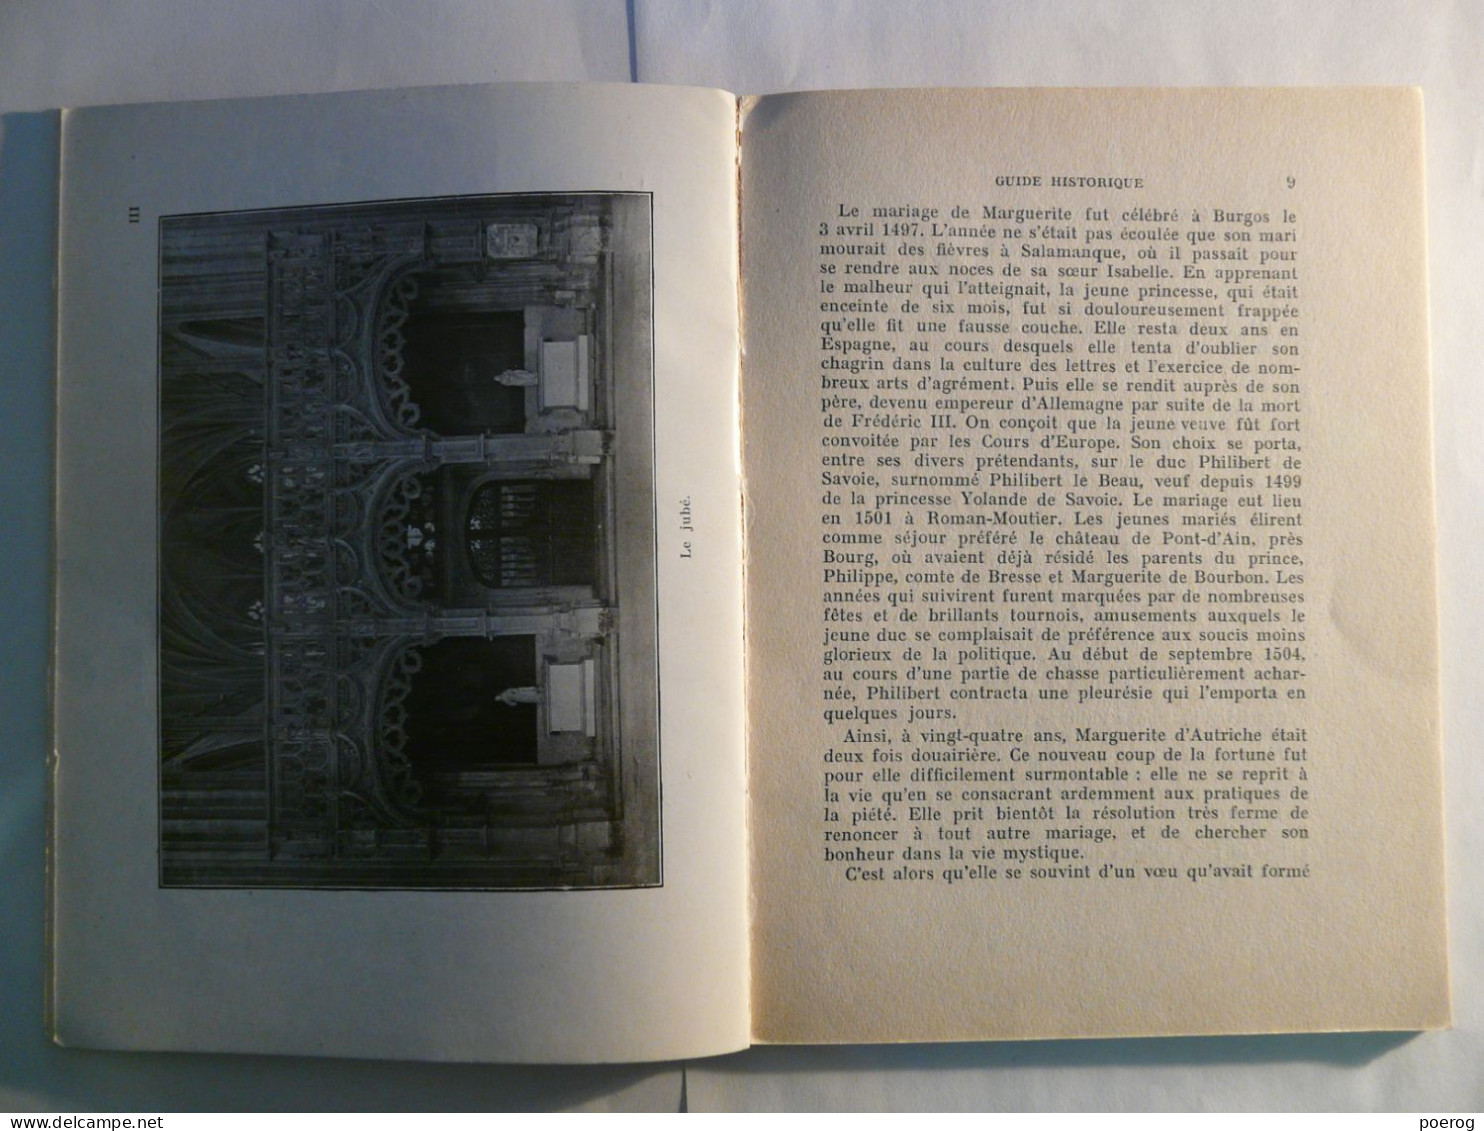 L'EGLISE DE BROU - AIN - EDITIONS ALBERT MORANCE CIRCA 1953 - 14cm X 18cm - Monographie - Rhône-Alpes